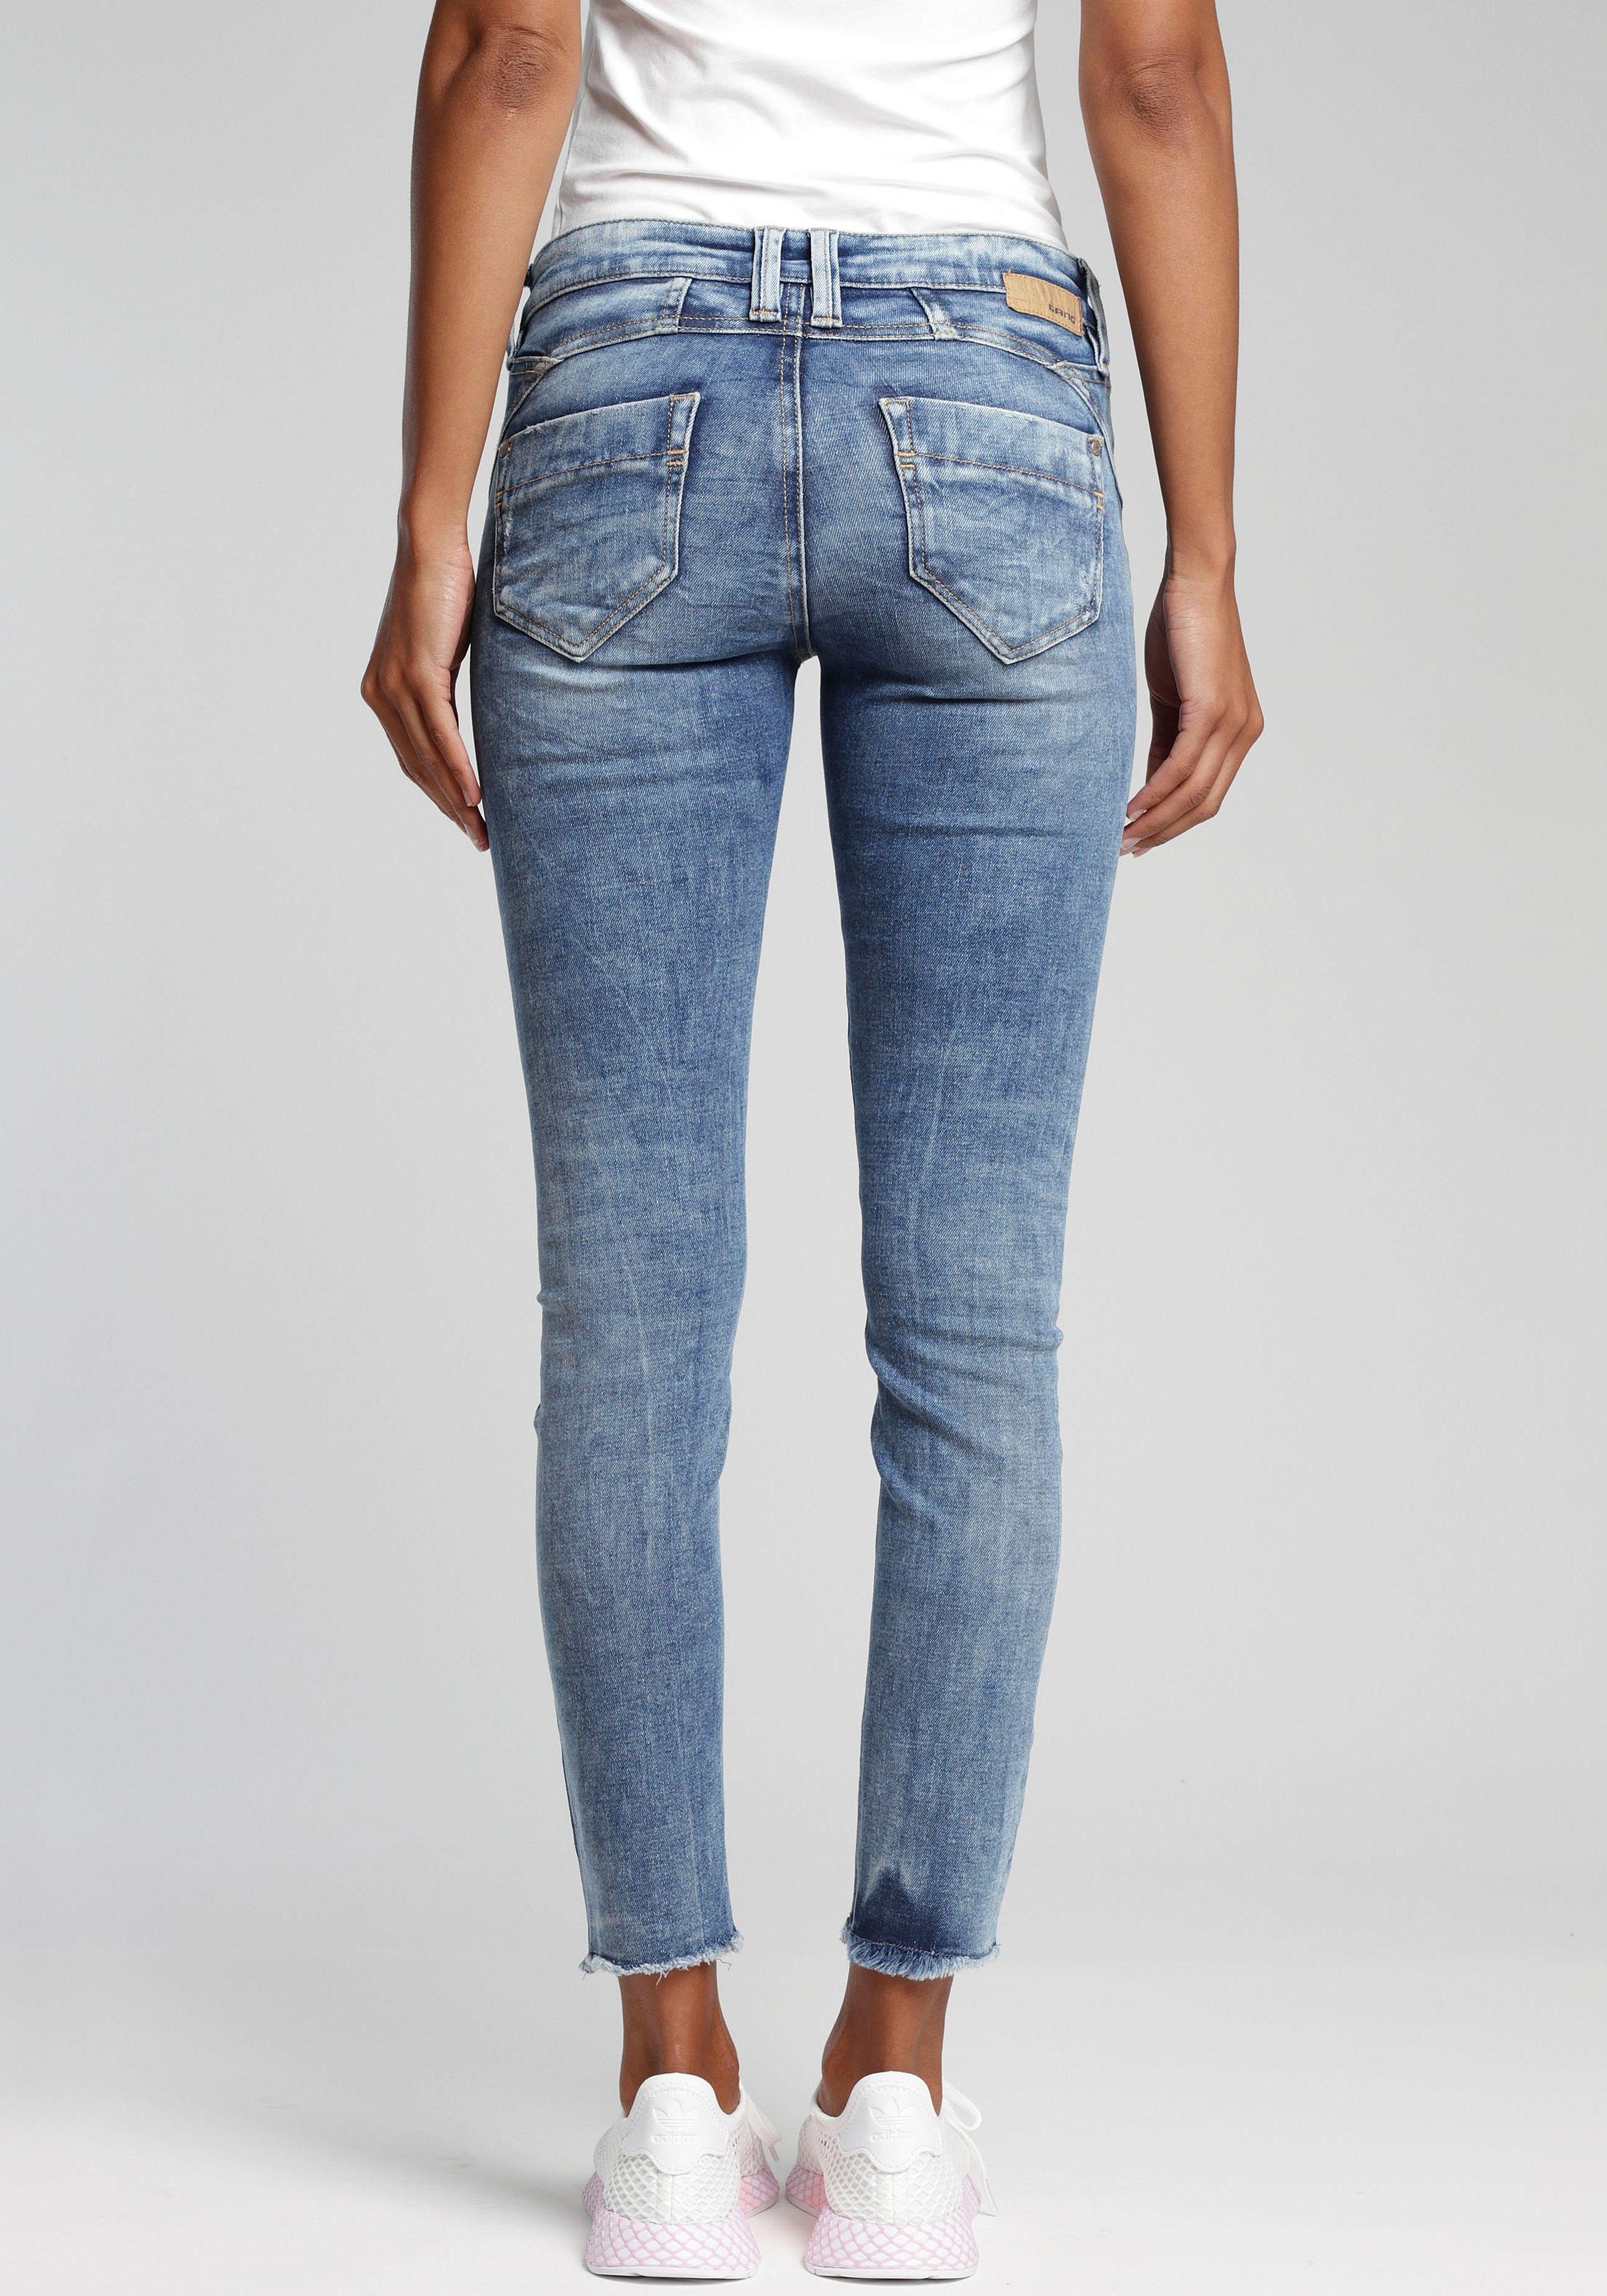 Jeans Größe 40 online kaufen | OTTO